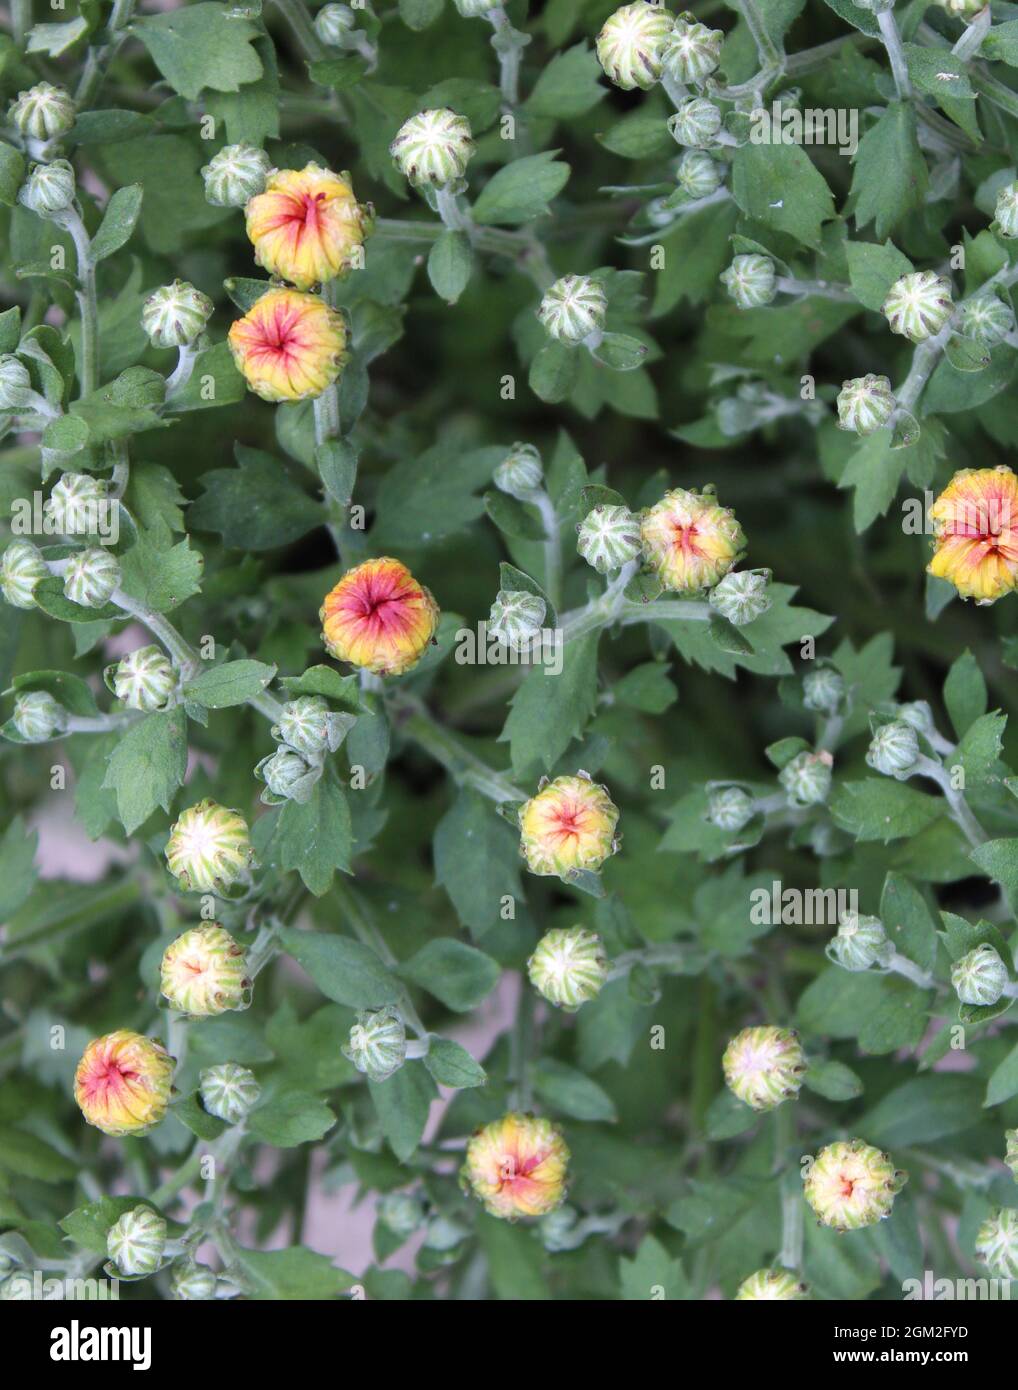 Germogli piccoli su una pianta di Chrysanthemum Foto Stock